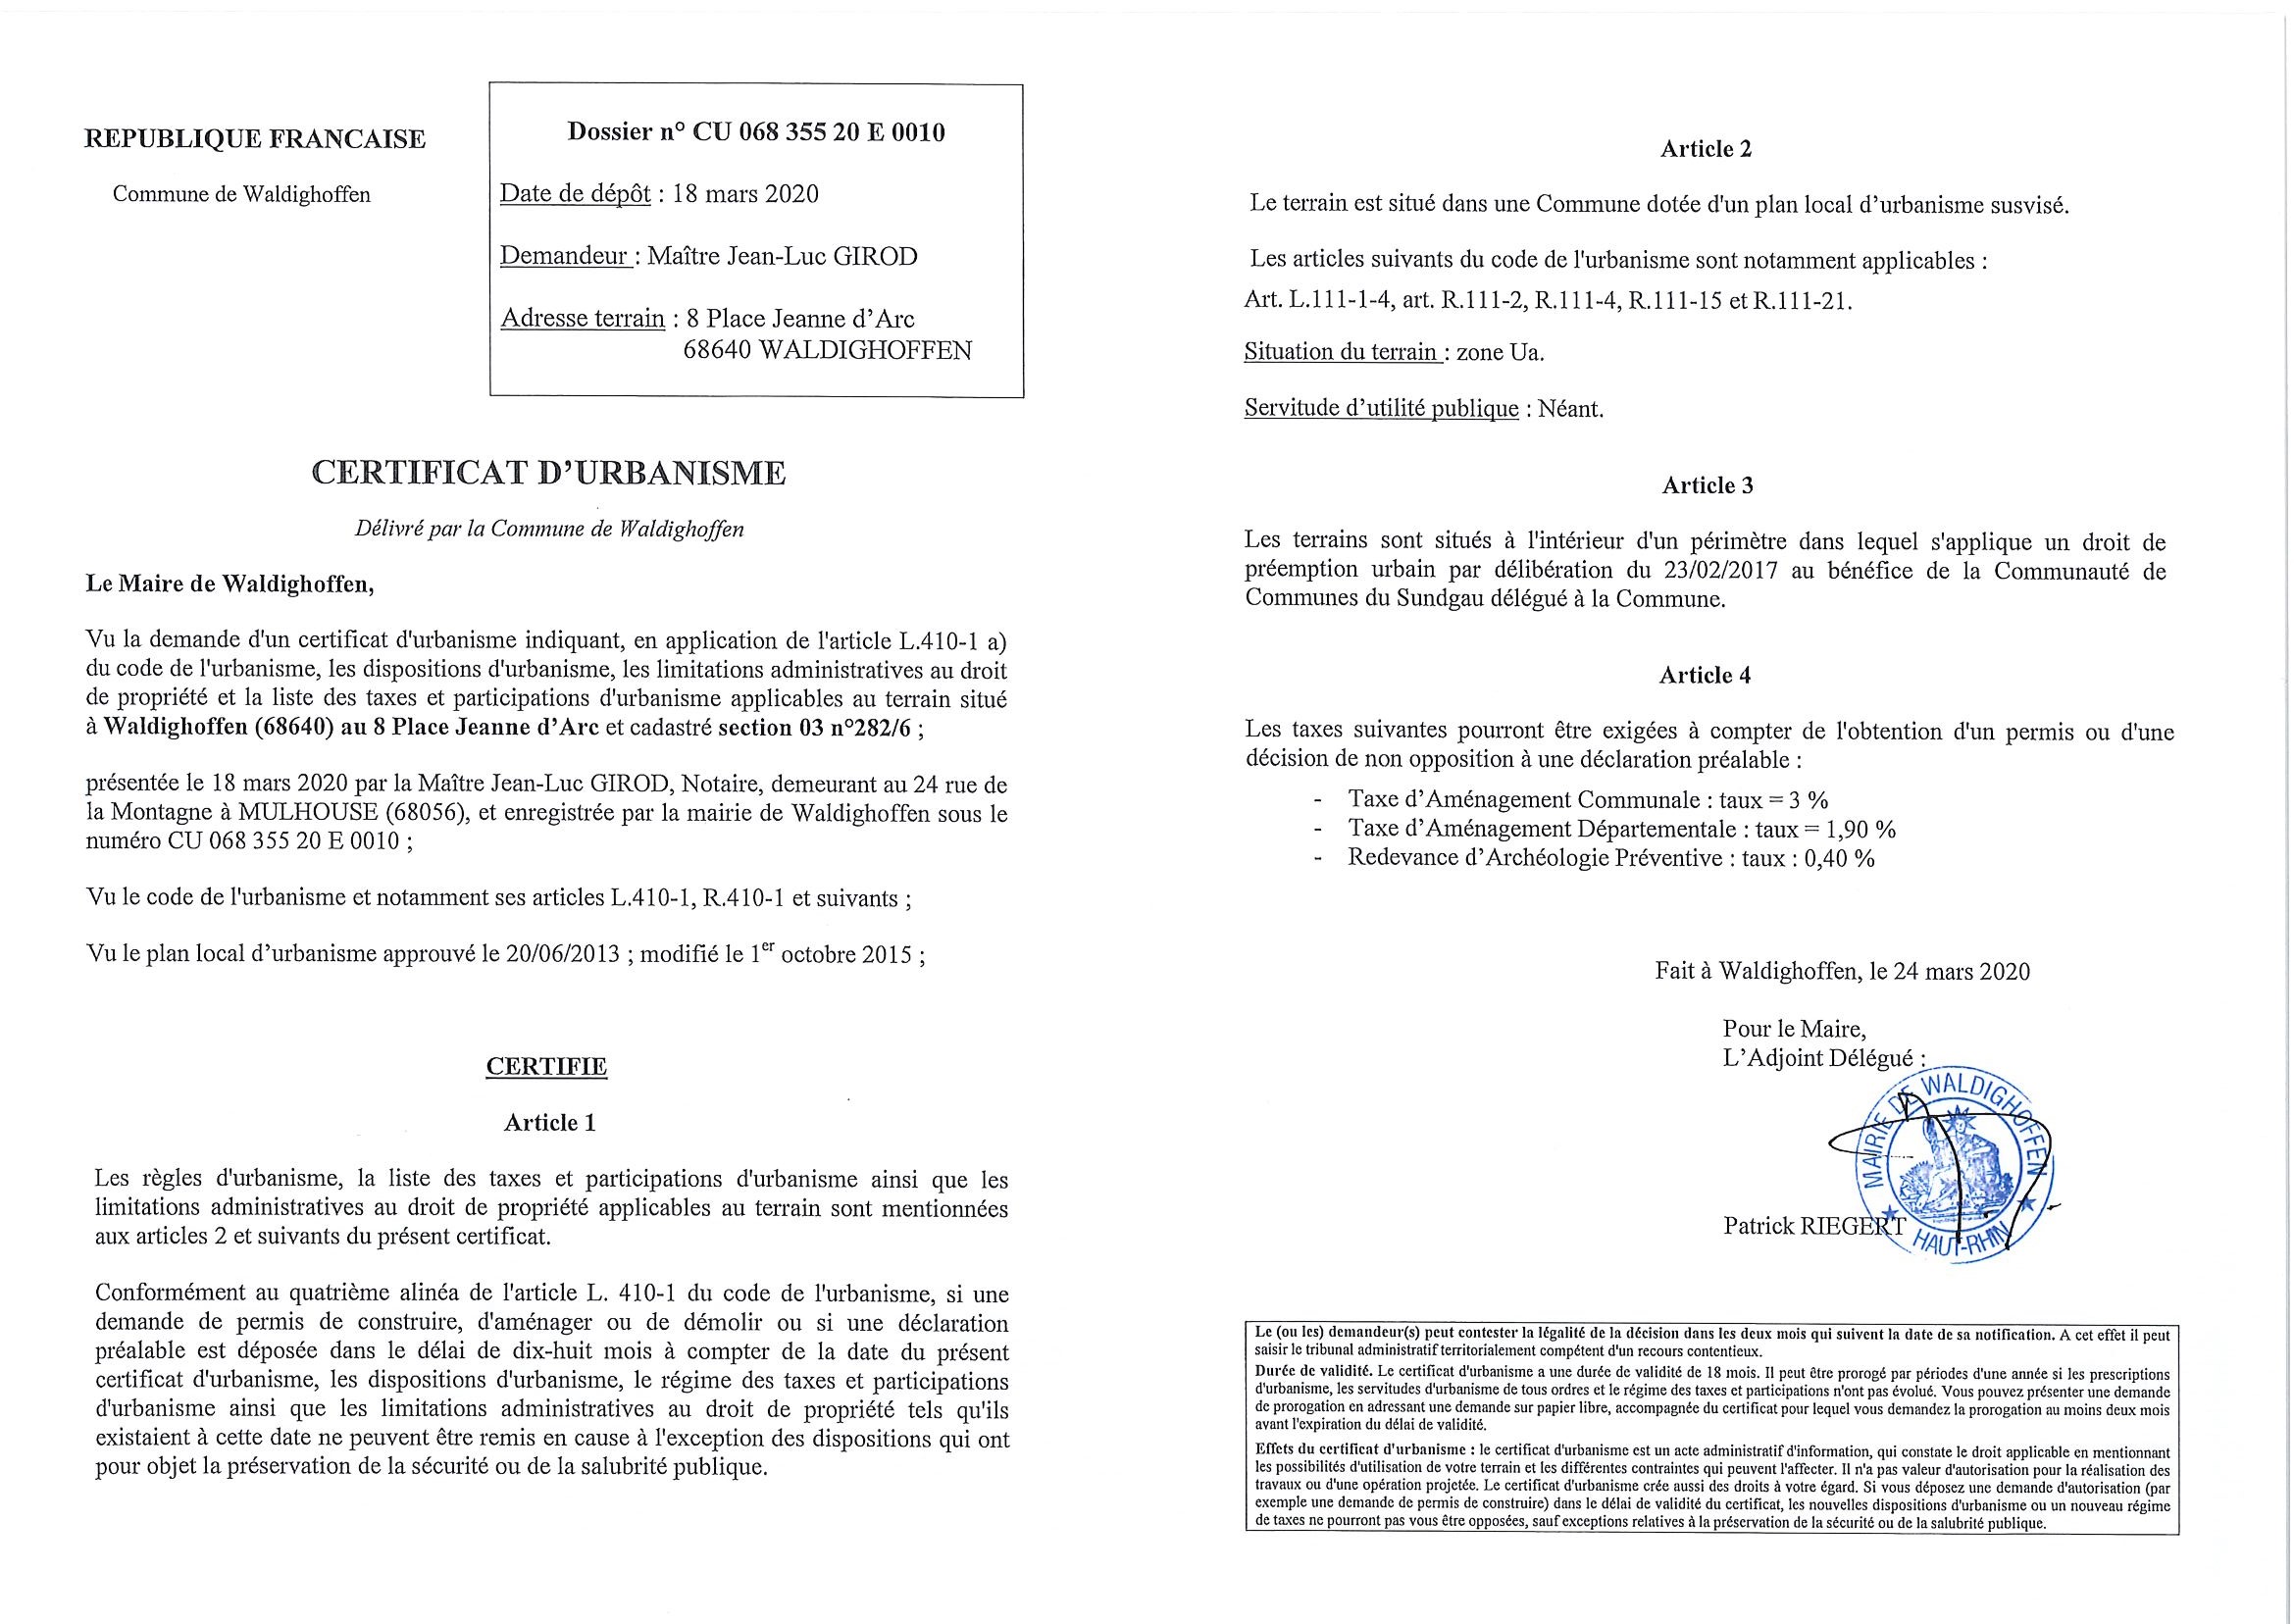 Certificat d'urbanisme établi pour Maître Girod Jean-Luc